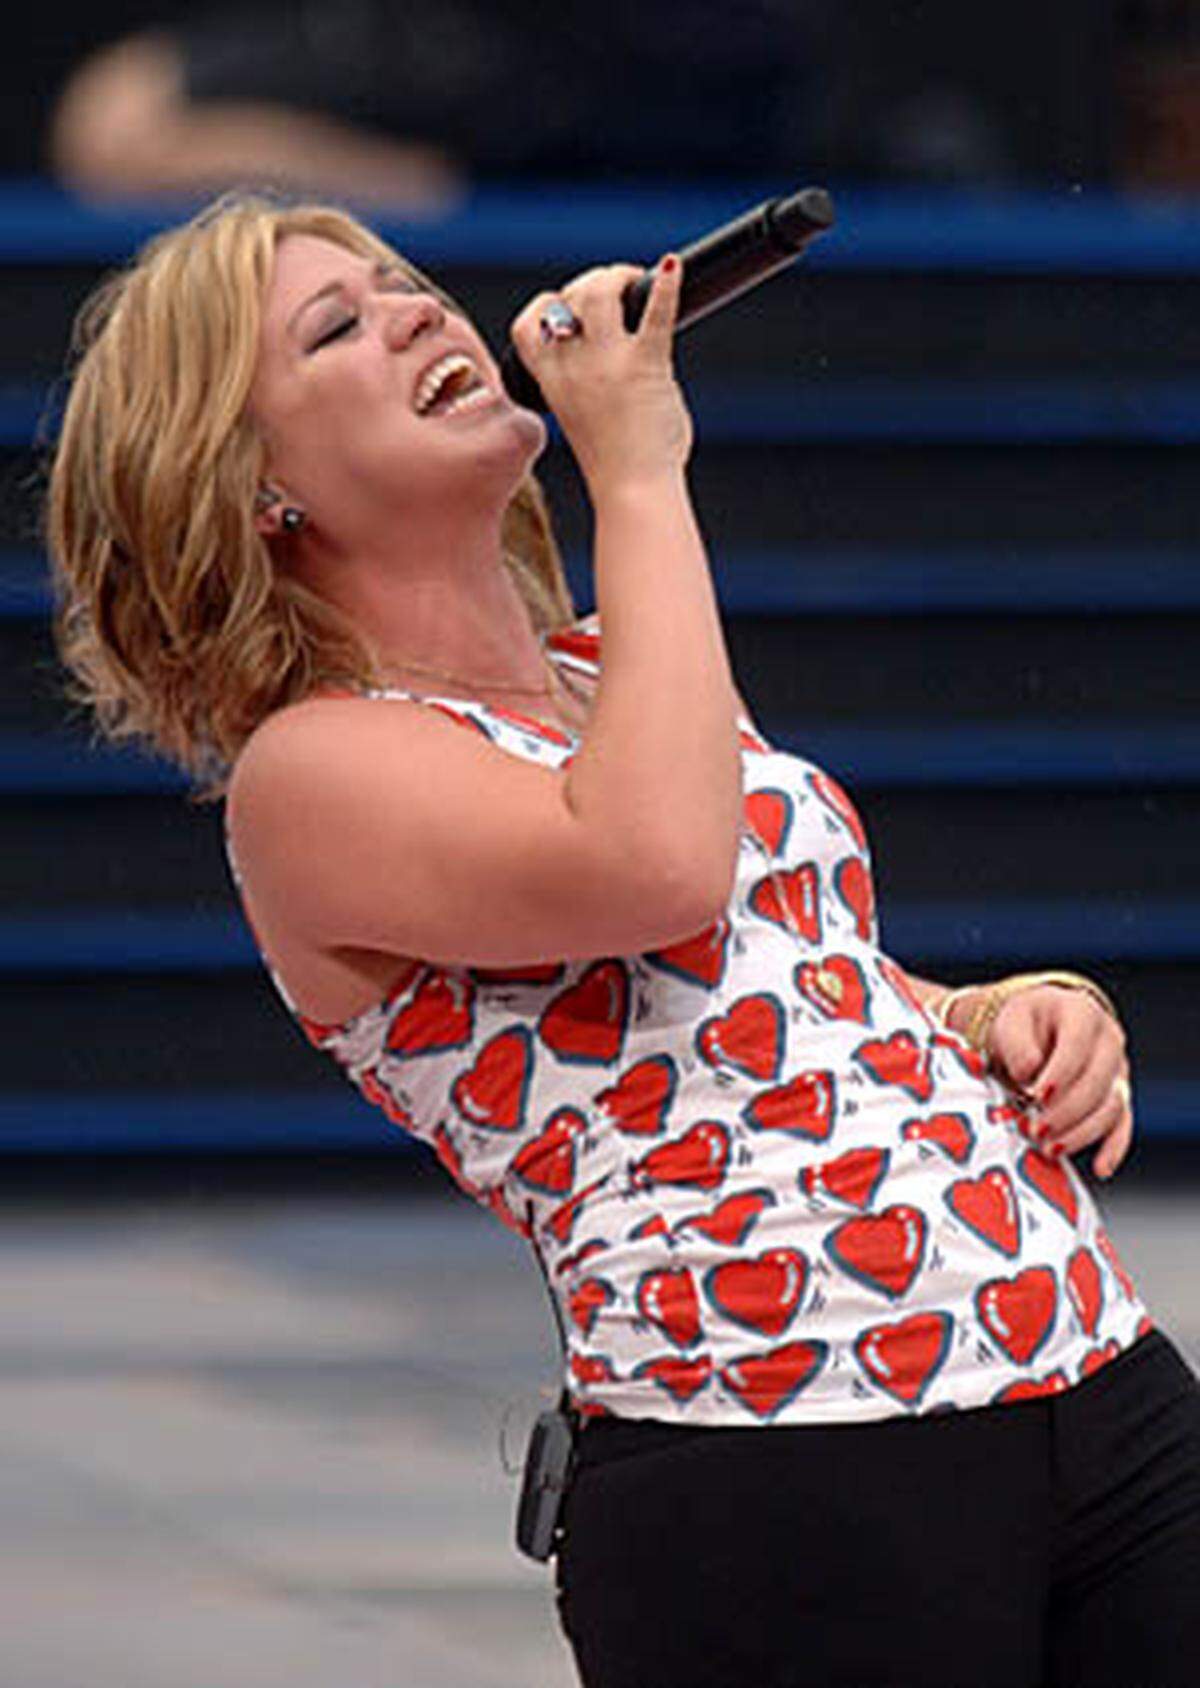 Ebenfalls Grammy-prämiert ist Kelly Clarkson, "American Idol"-Gewinnerin 2002. Sie schreibt inzwischen an ihrem fünften Studioalbum.